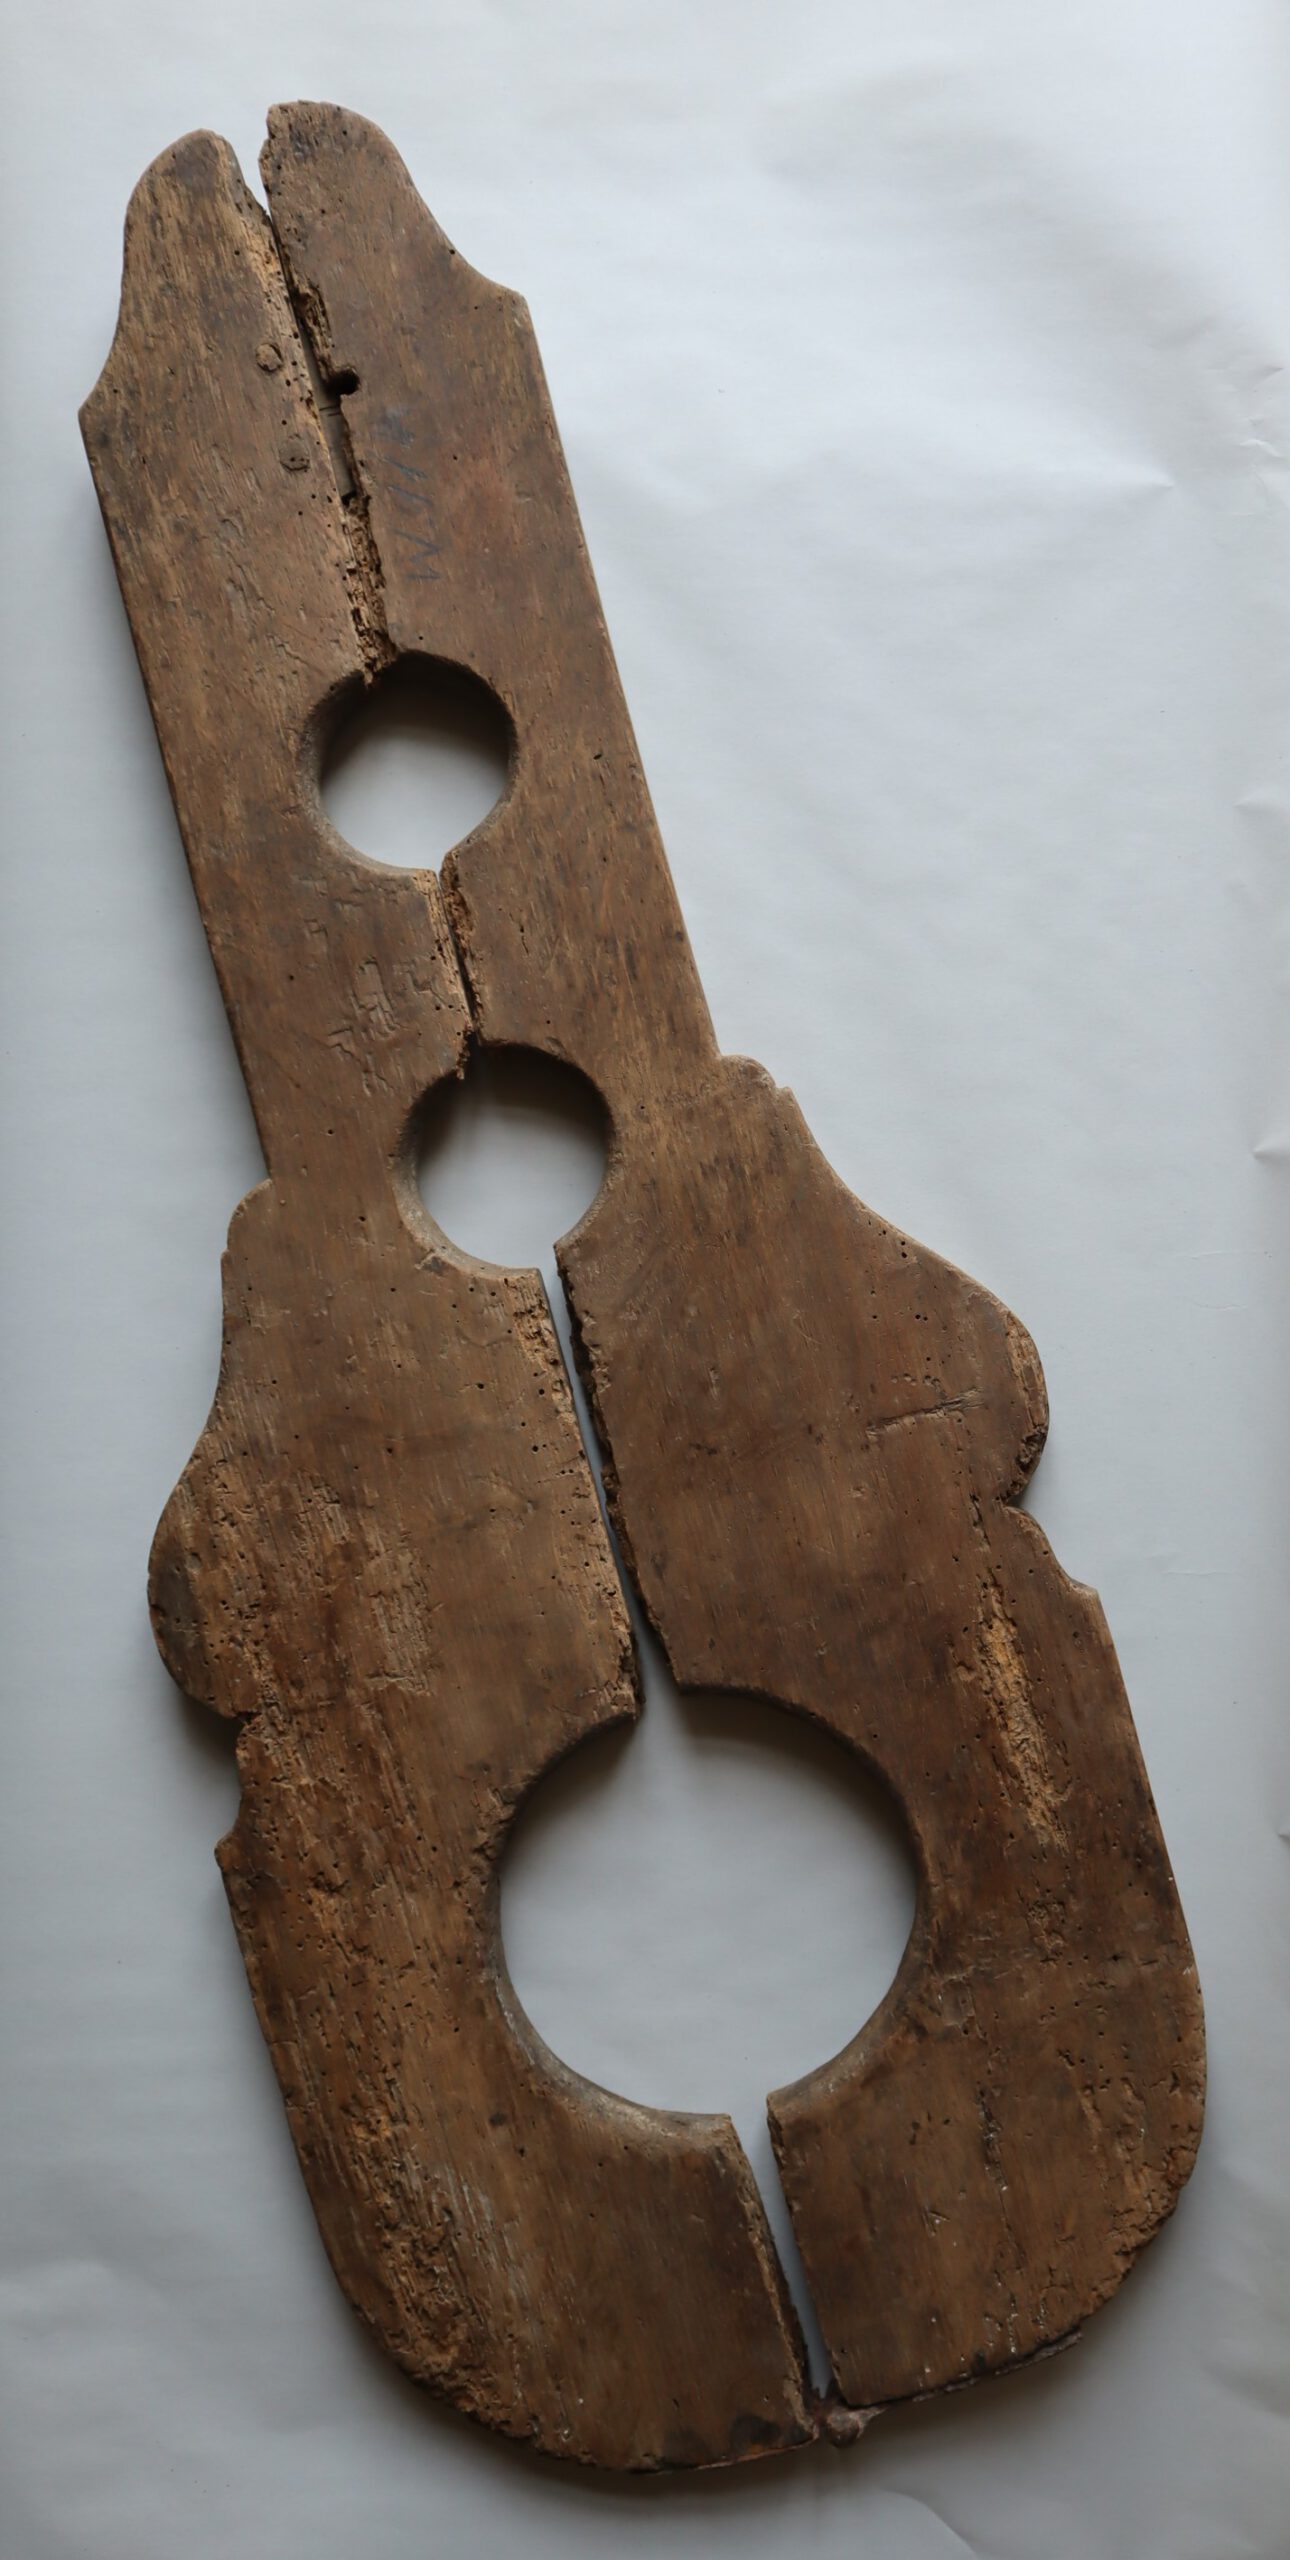 zweiteilige Schandgeige aus Holz, die von der Form her an das gleichnamige Musikinstrument erinnert, mit einer großen Aussparung für den Kopf und zwei kleinen für die Hände, als Objekt im Strafvollzugsmuseum ausgestellt